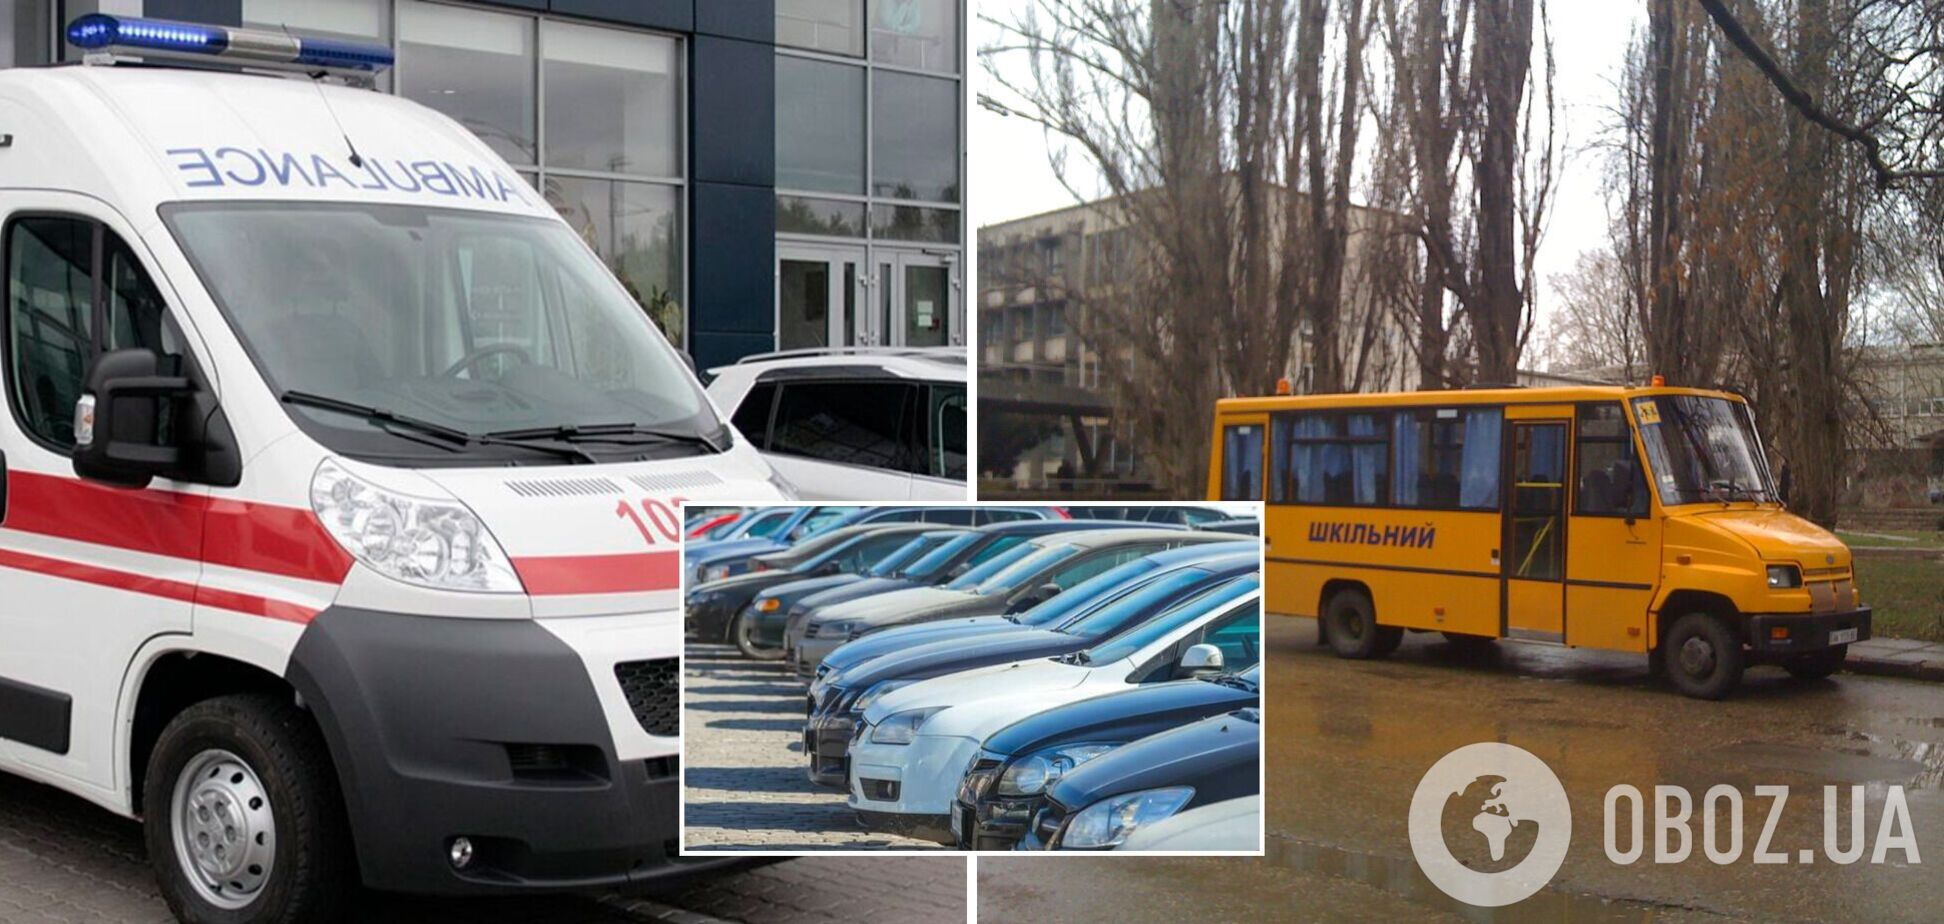 В Сумской области российские оккупанты похищают школьные автобусы, авто спецслужб и гражданские машины